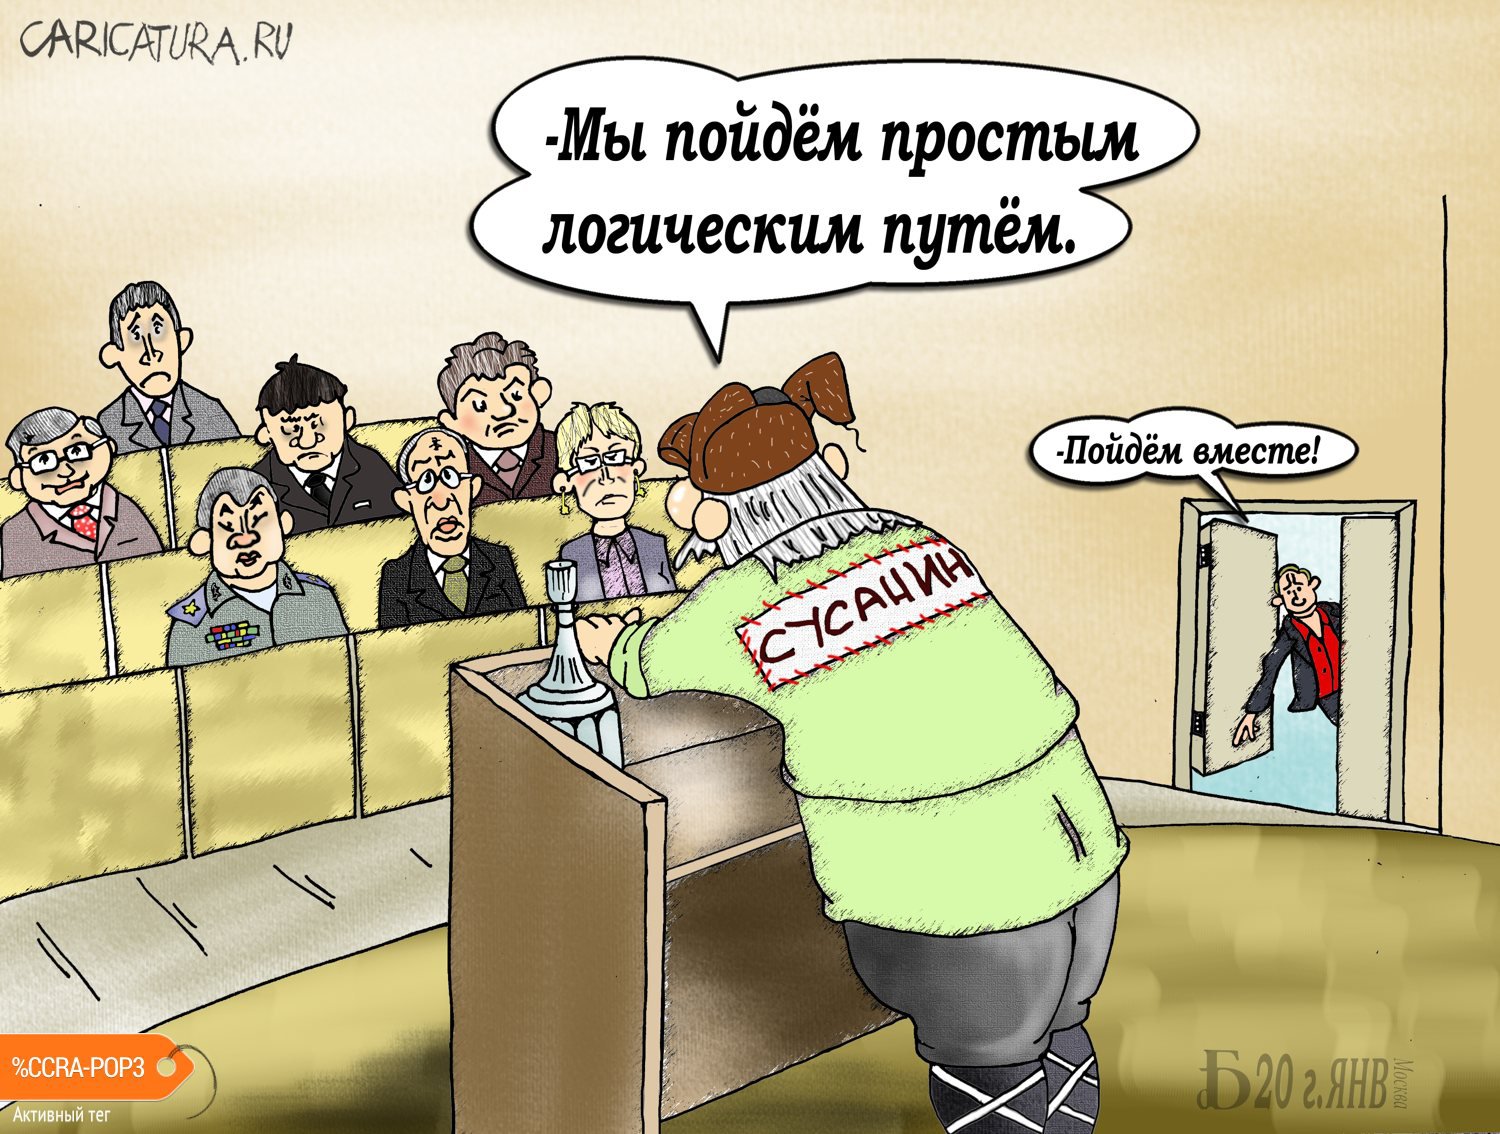 Карикатура "Про логистику", Борис Демин